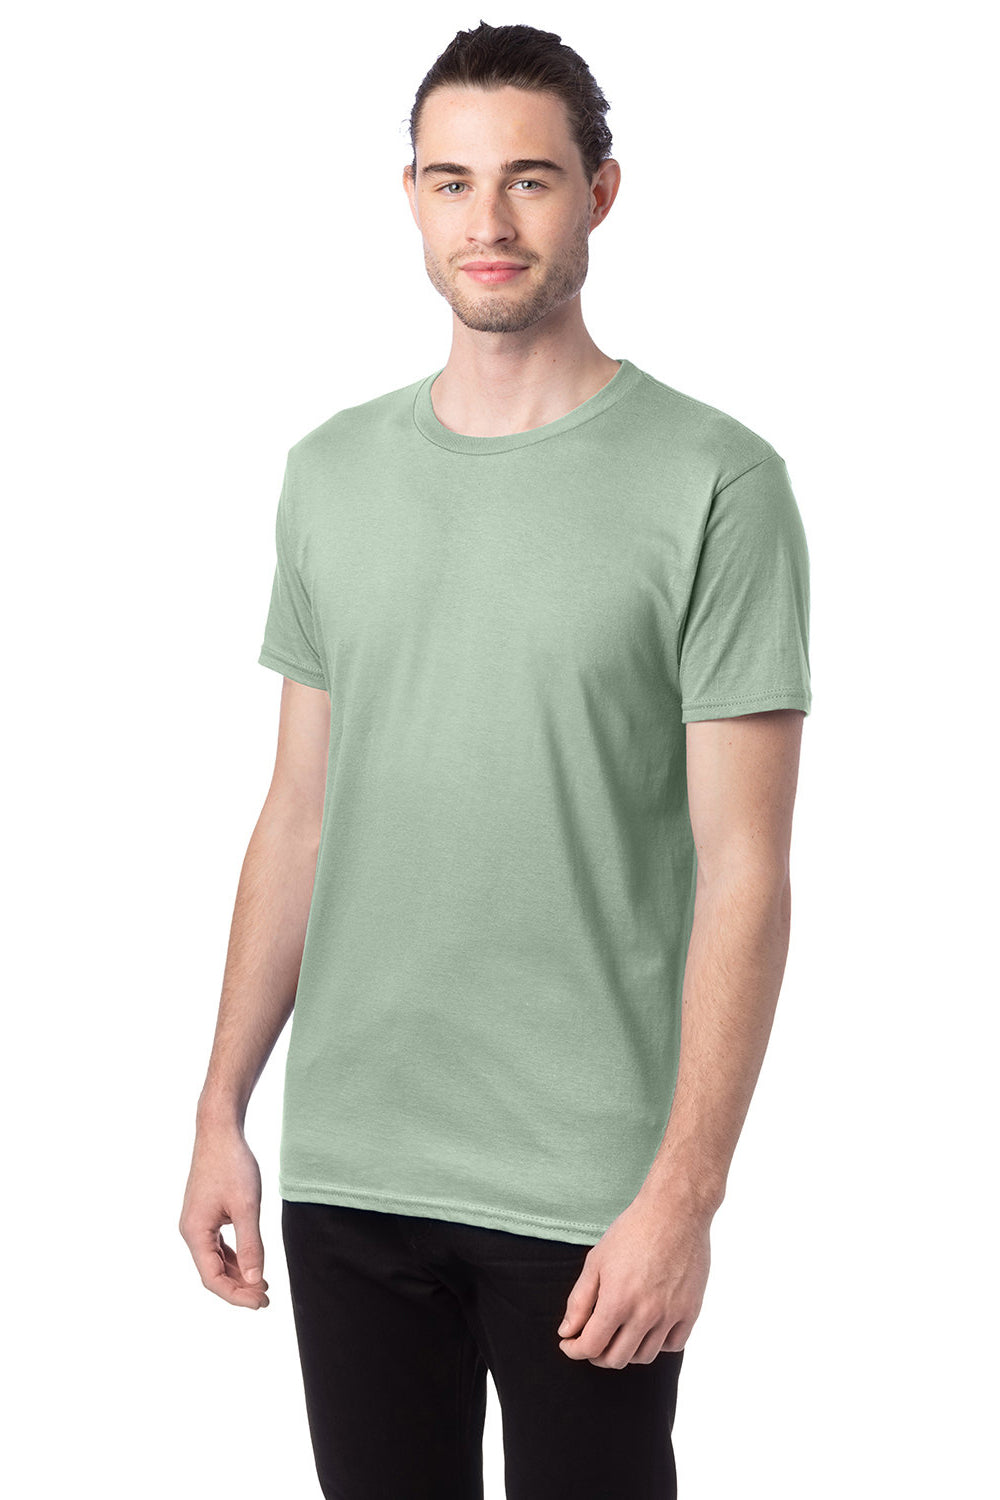 Hanes 4980 Mens Nano-T Short Sleeve Crewneck T-Shirt Equilibrium Green 3Q